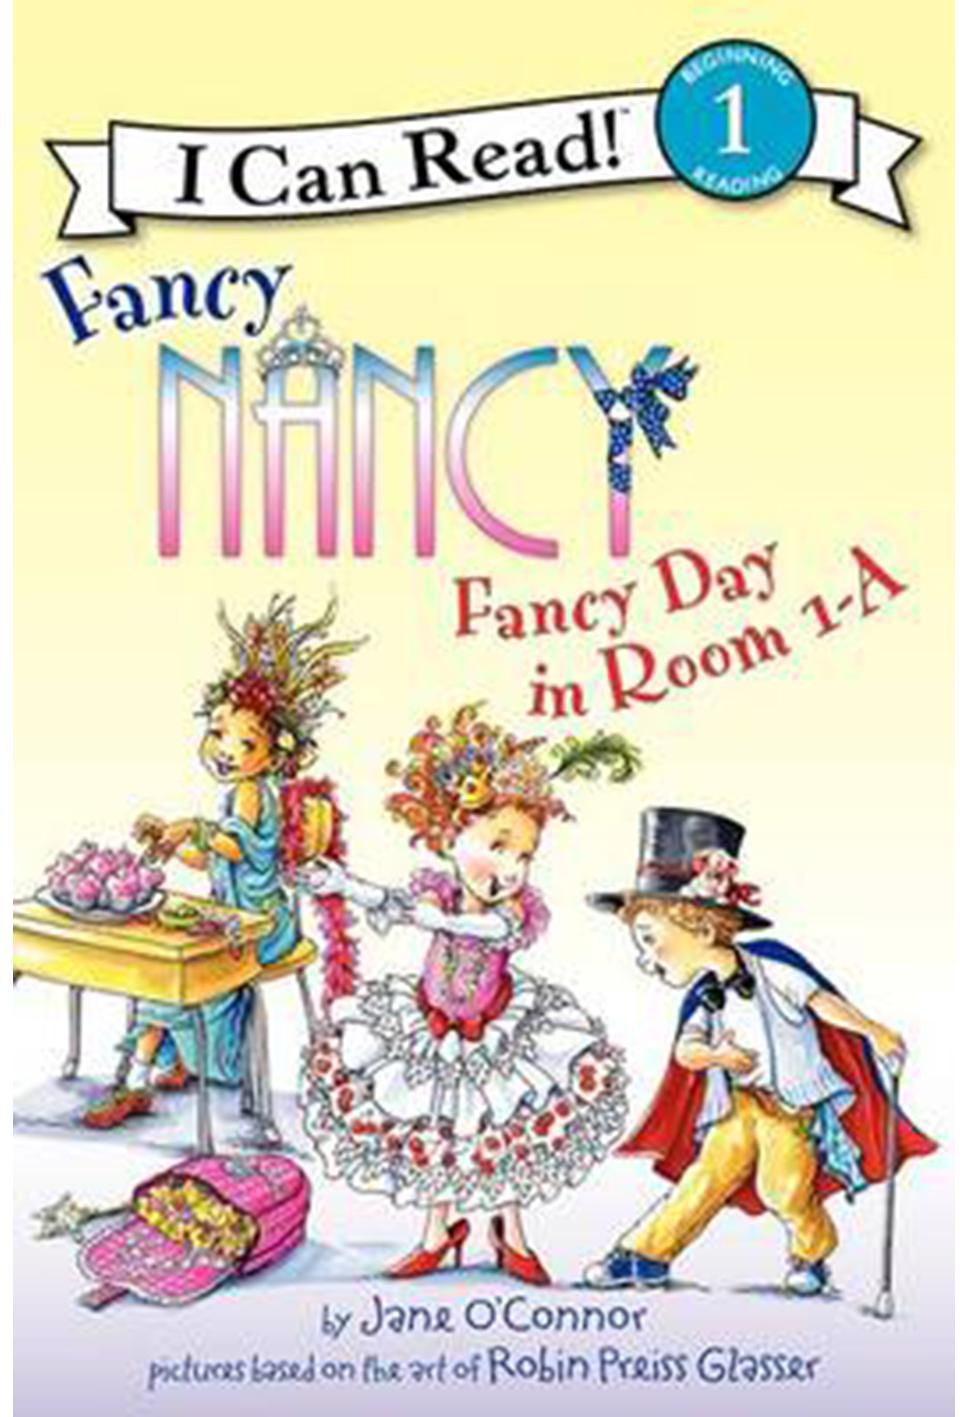 I Can Read! Fancy Nancy: Fancy Day in Room 1-A